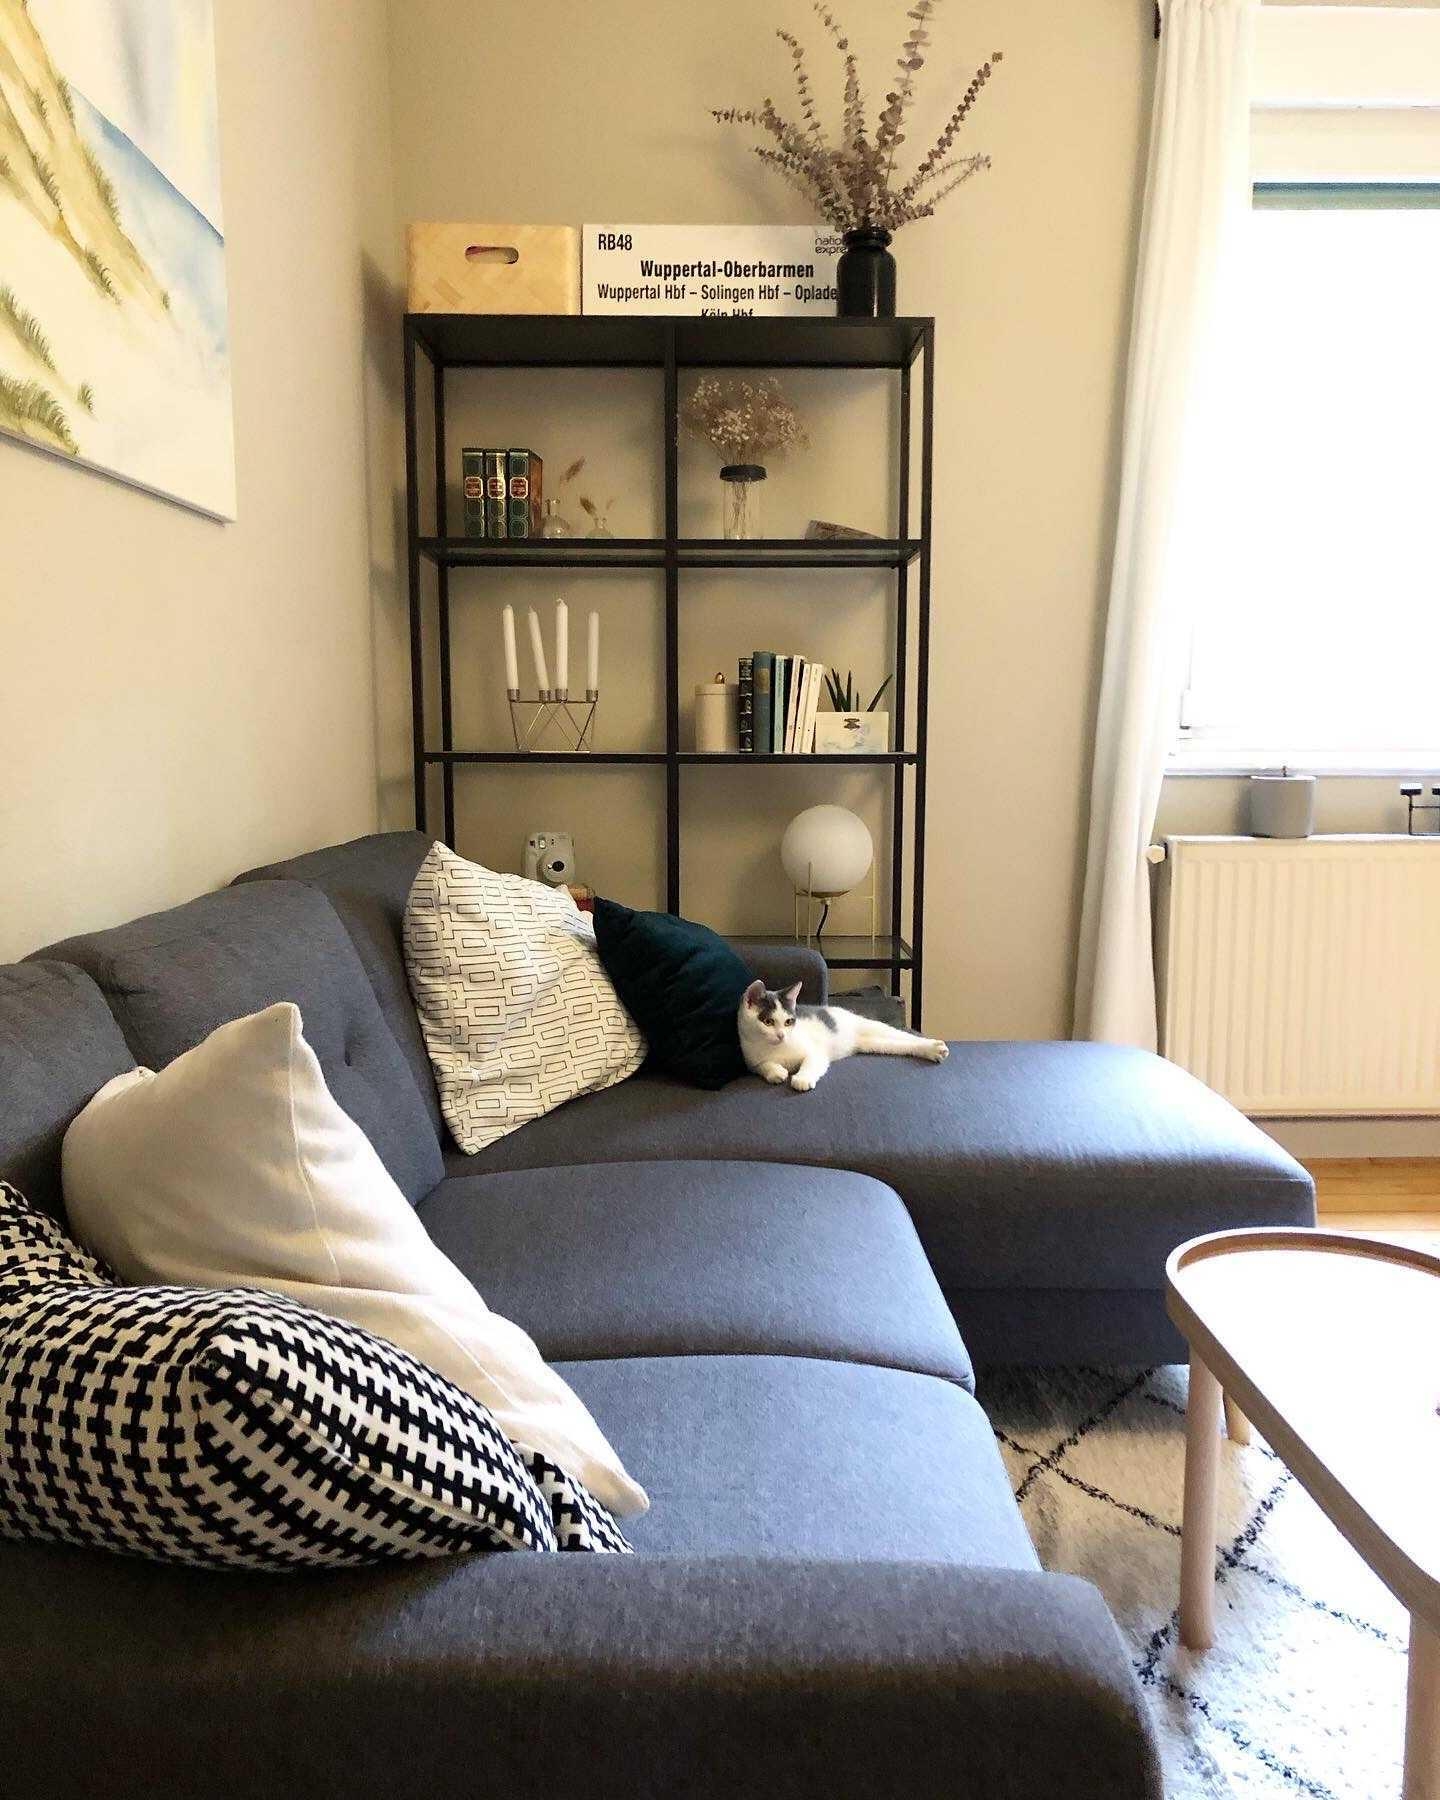 Hallo neuer Mitbewohner! #catmom #katzen #wohnzimmer #livingroom #sofa